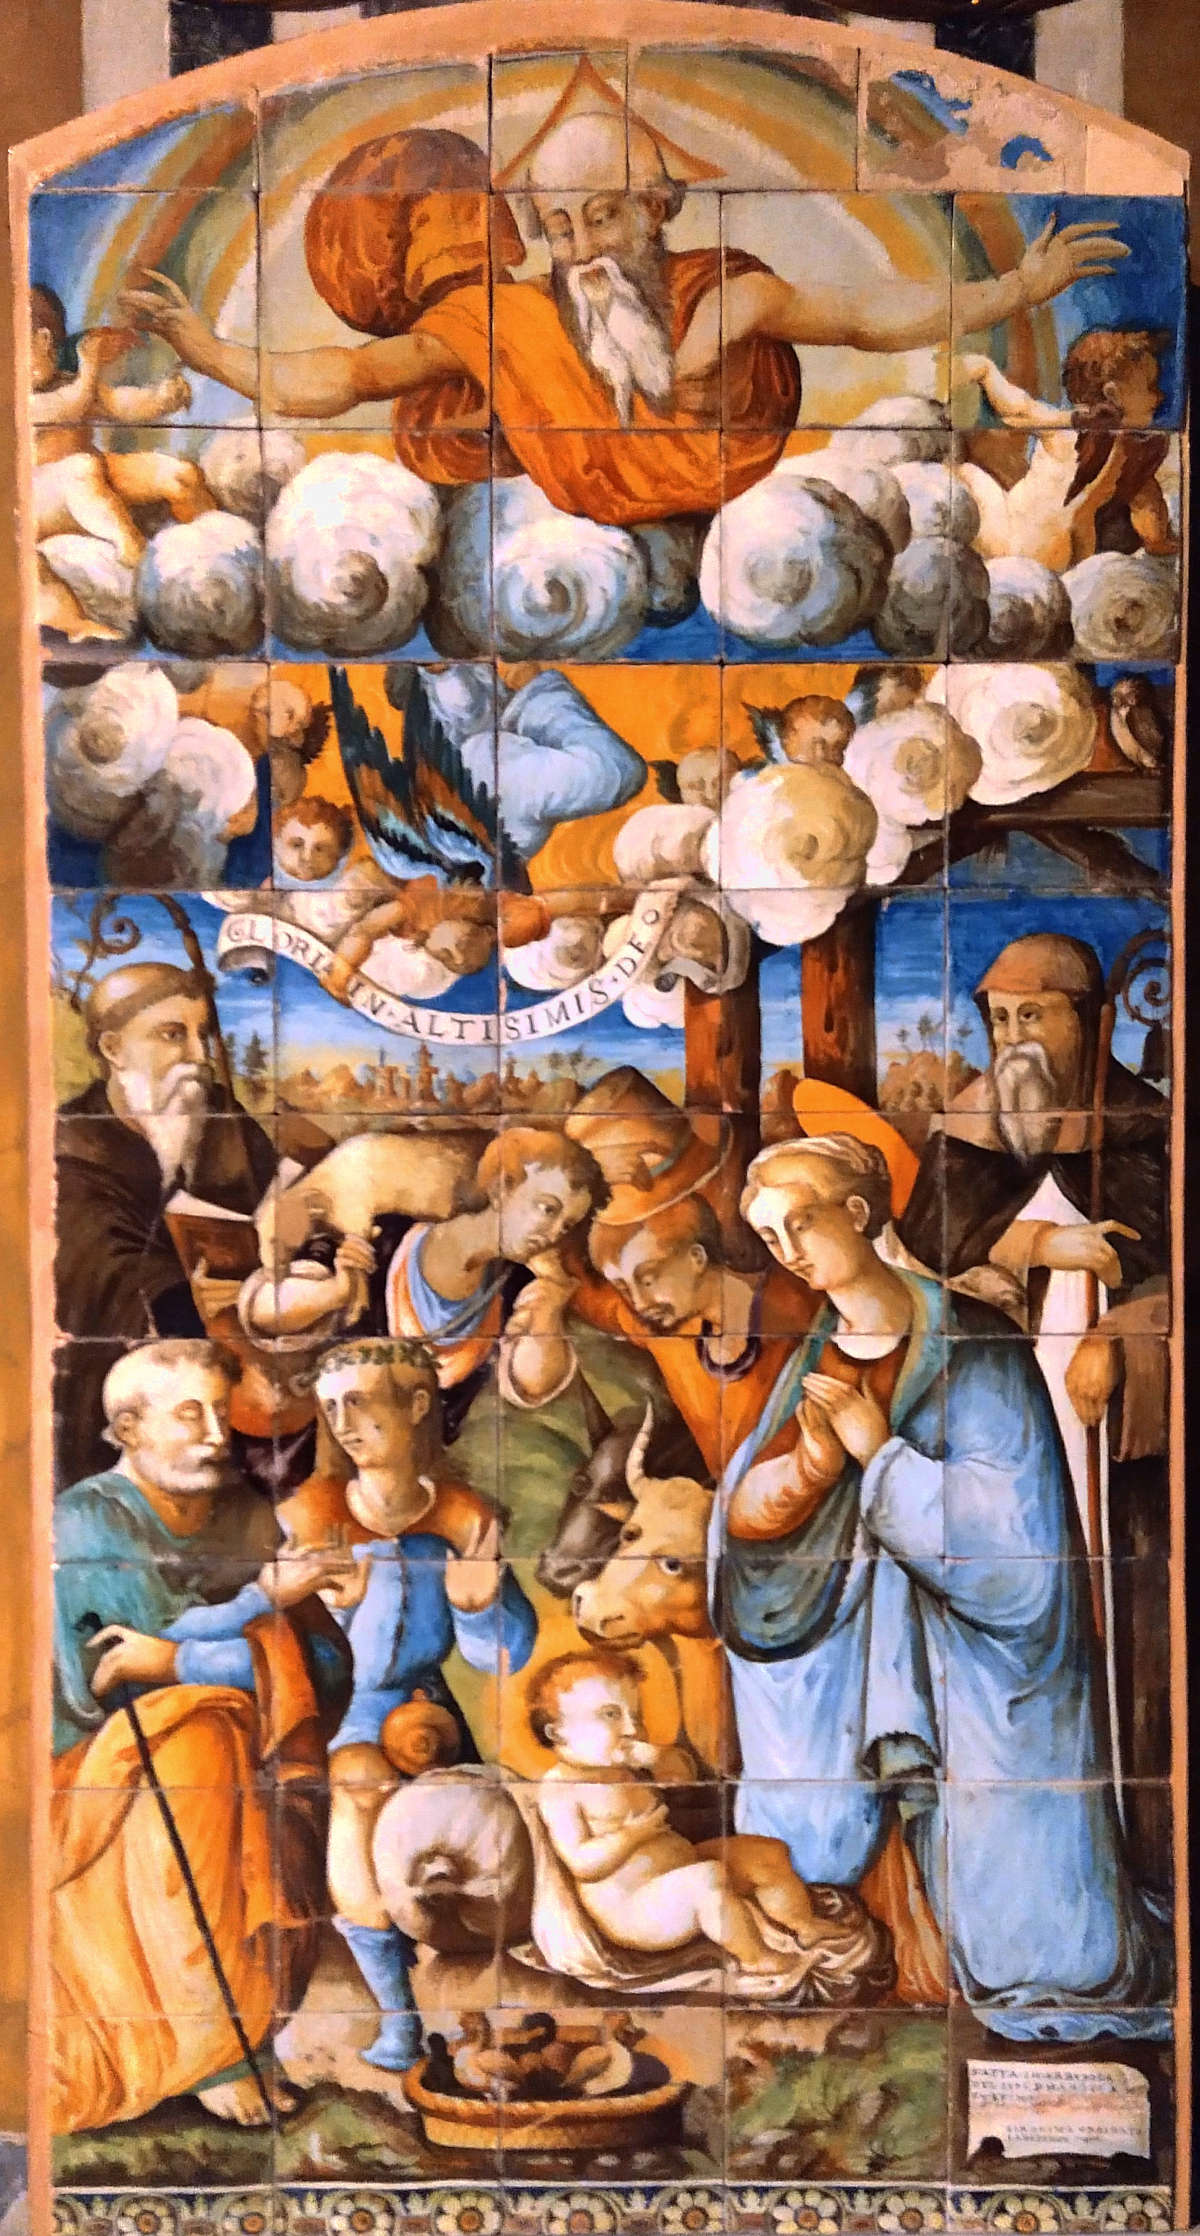 Agostino da Albissola and Gerolamo Urbinate, Adoration of the Shepherds (1576; majolica; Albissola Marina, Nostra Signora della Concordia)